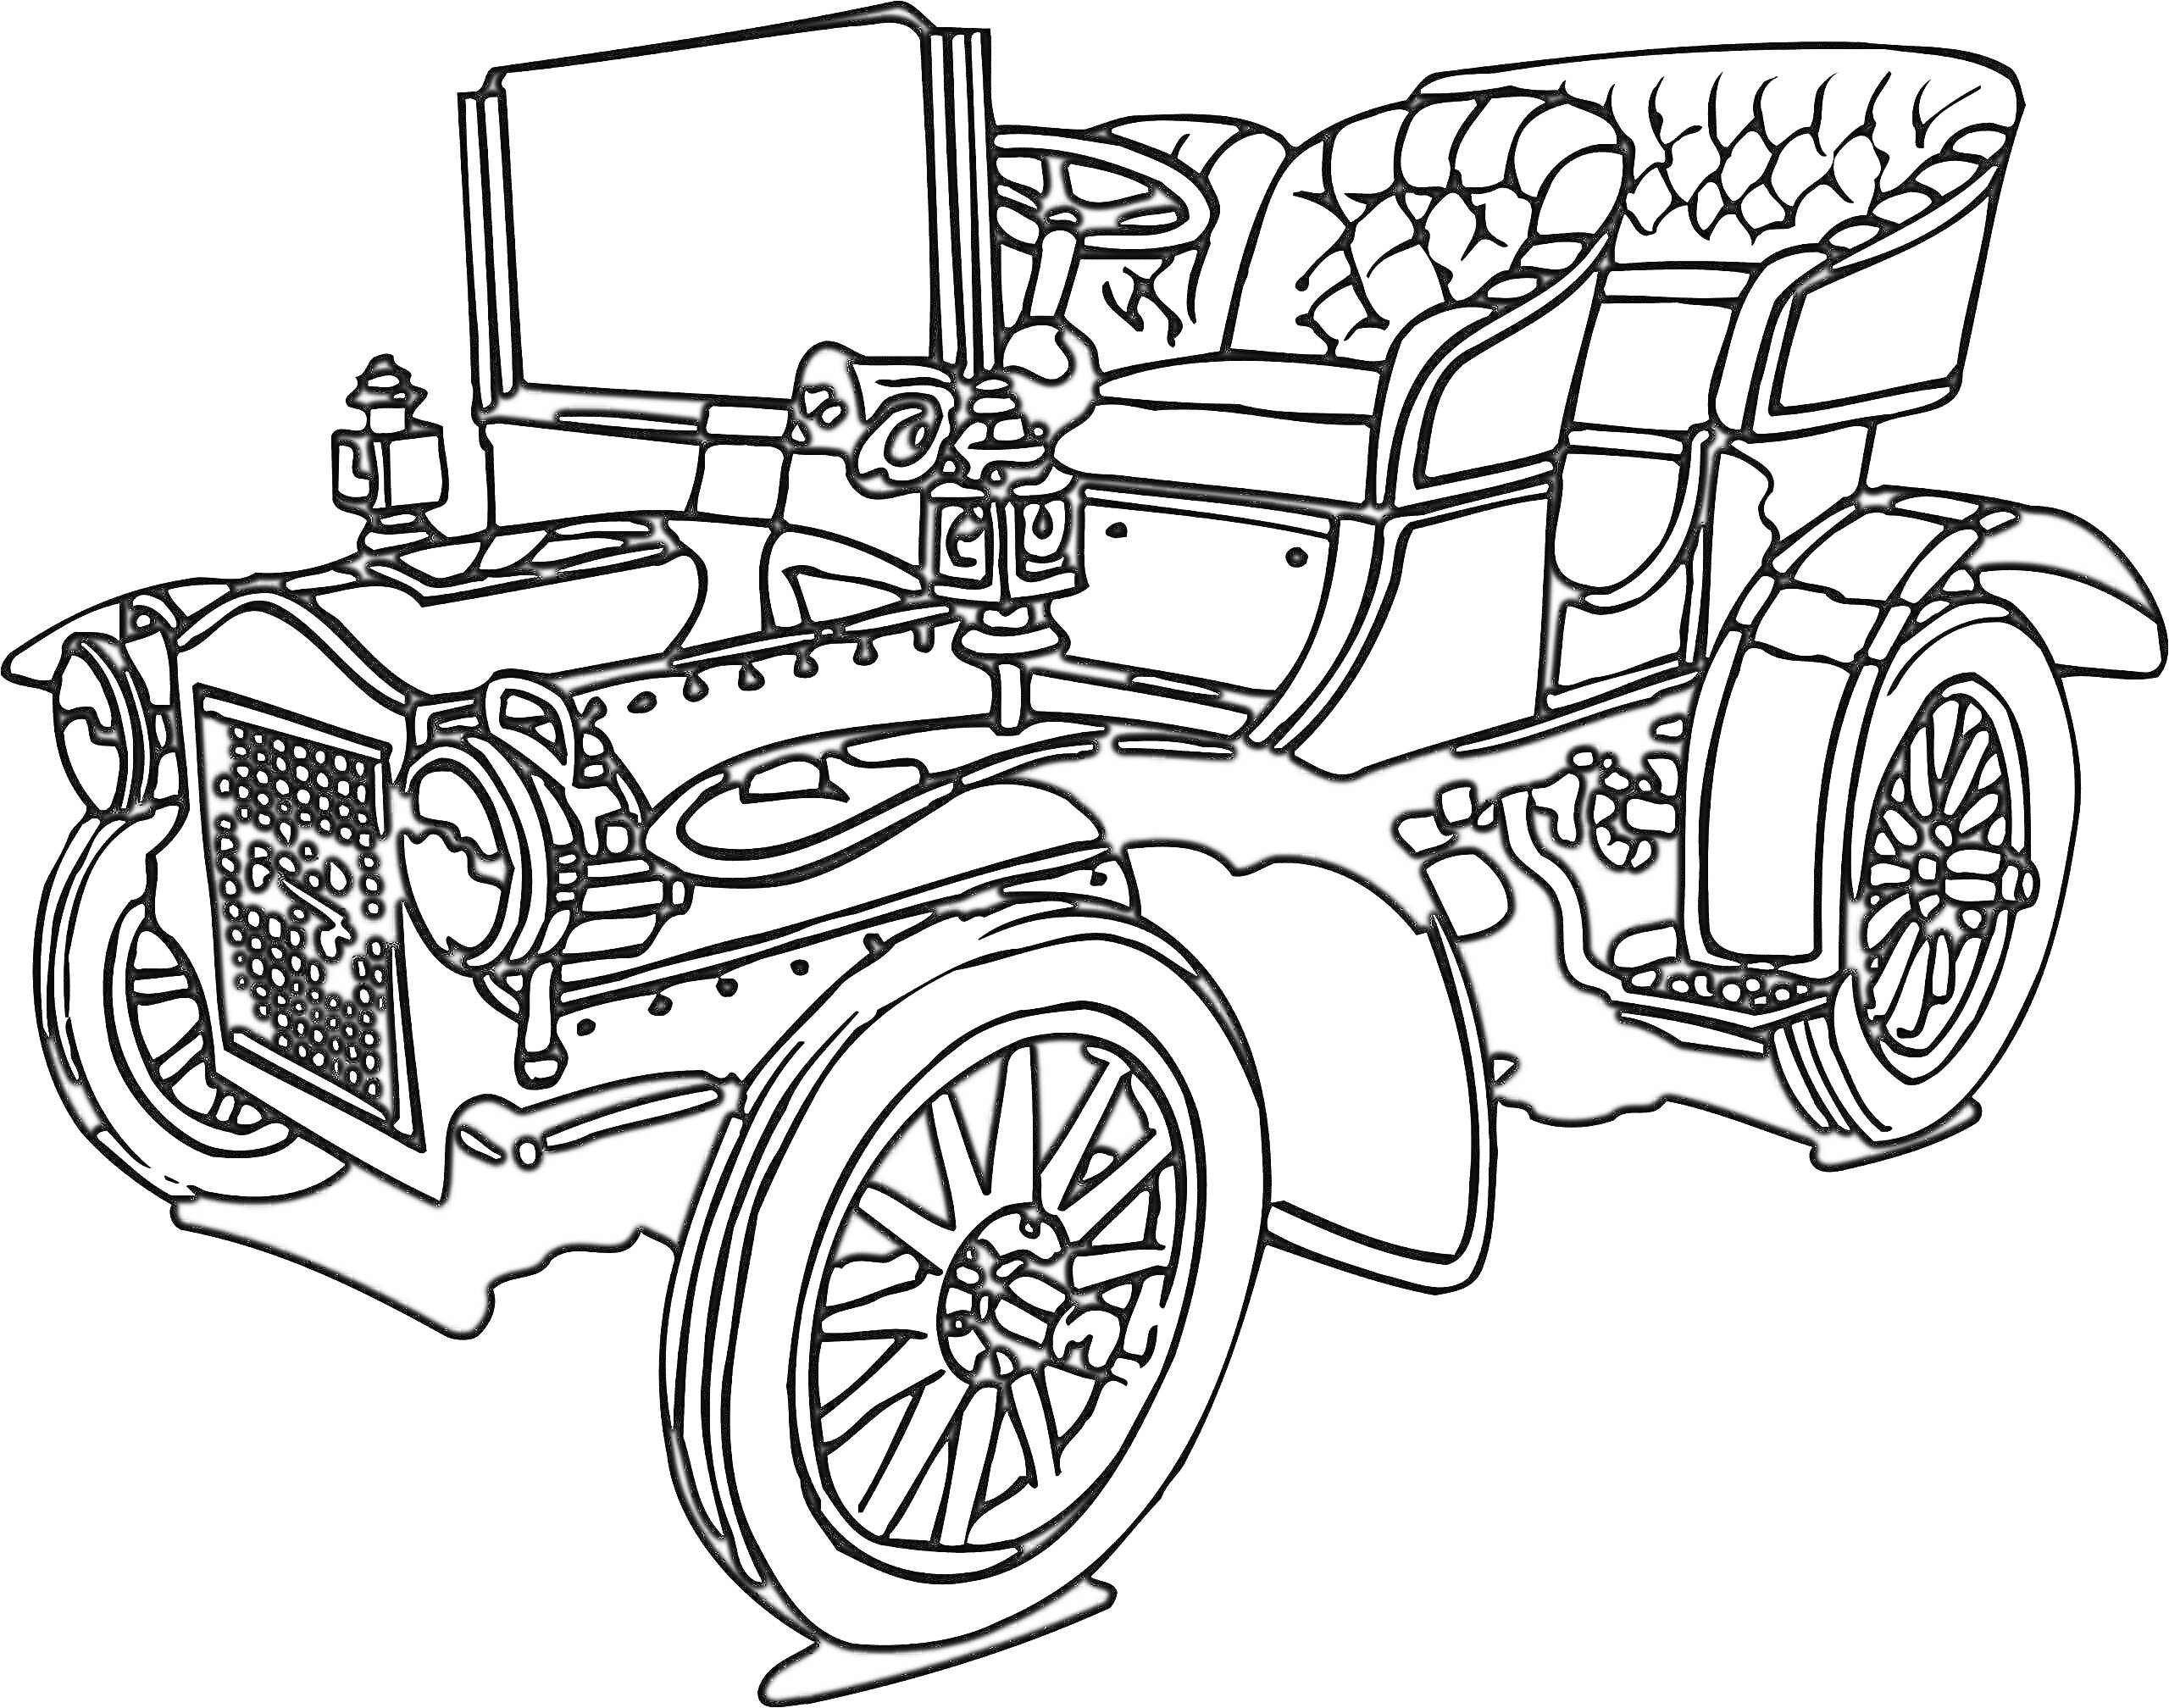 Раскраска Ретро автомобиль с открытым верхом, два сиденья, передние и задние колеса, руль, декоративные элементы на капоте